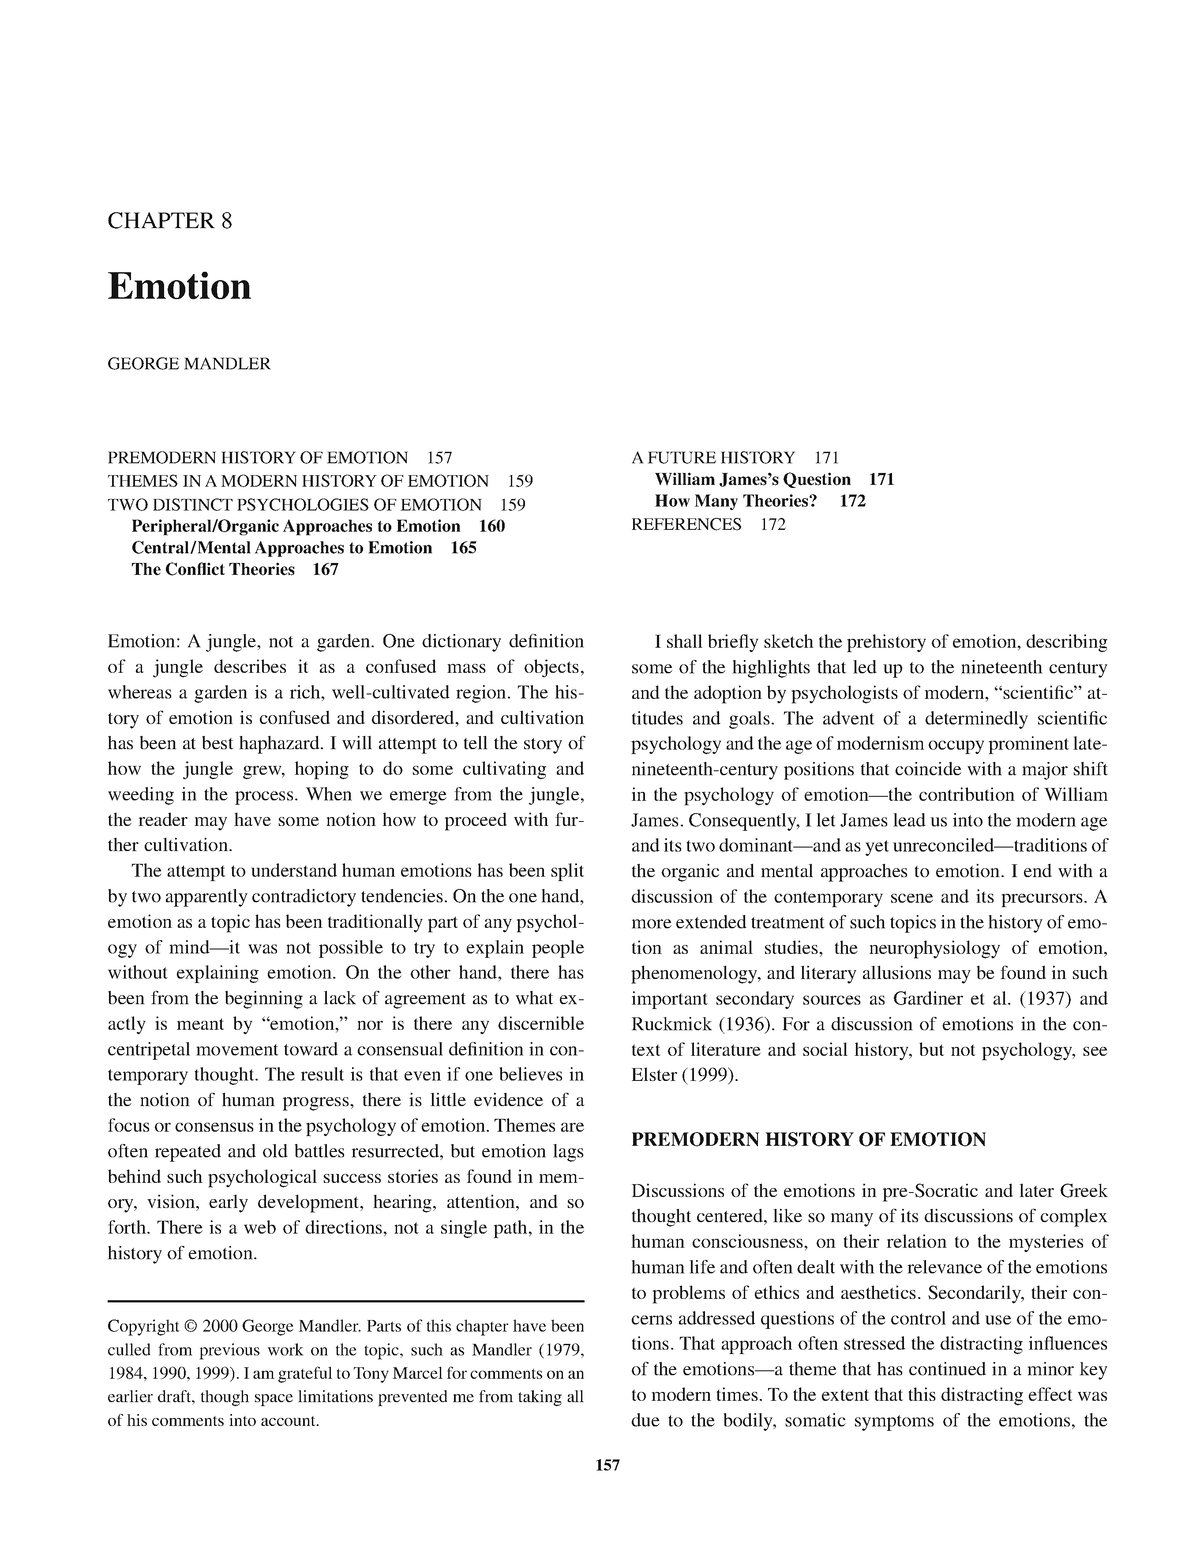 Handbook-of-psychology - CHAPTER 8 Emotion GEORGE MANDLER 157 PREMODERN ...